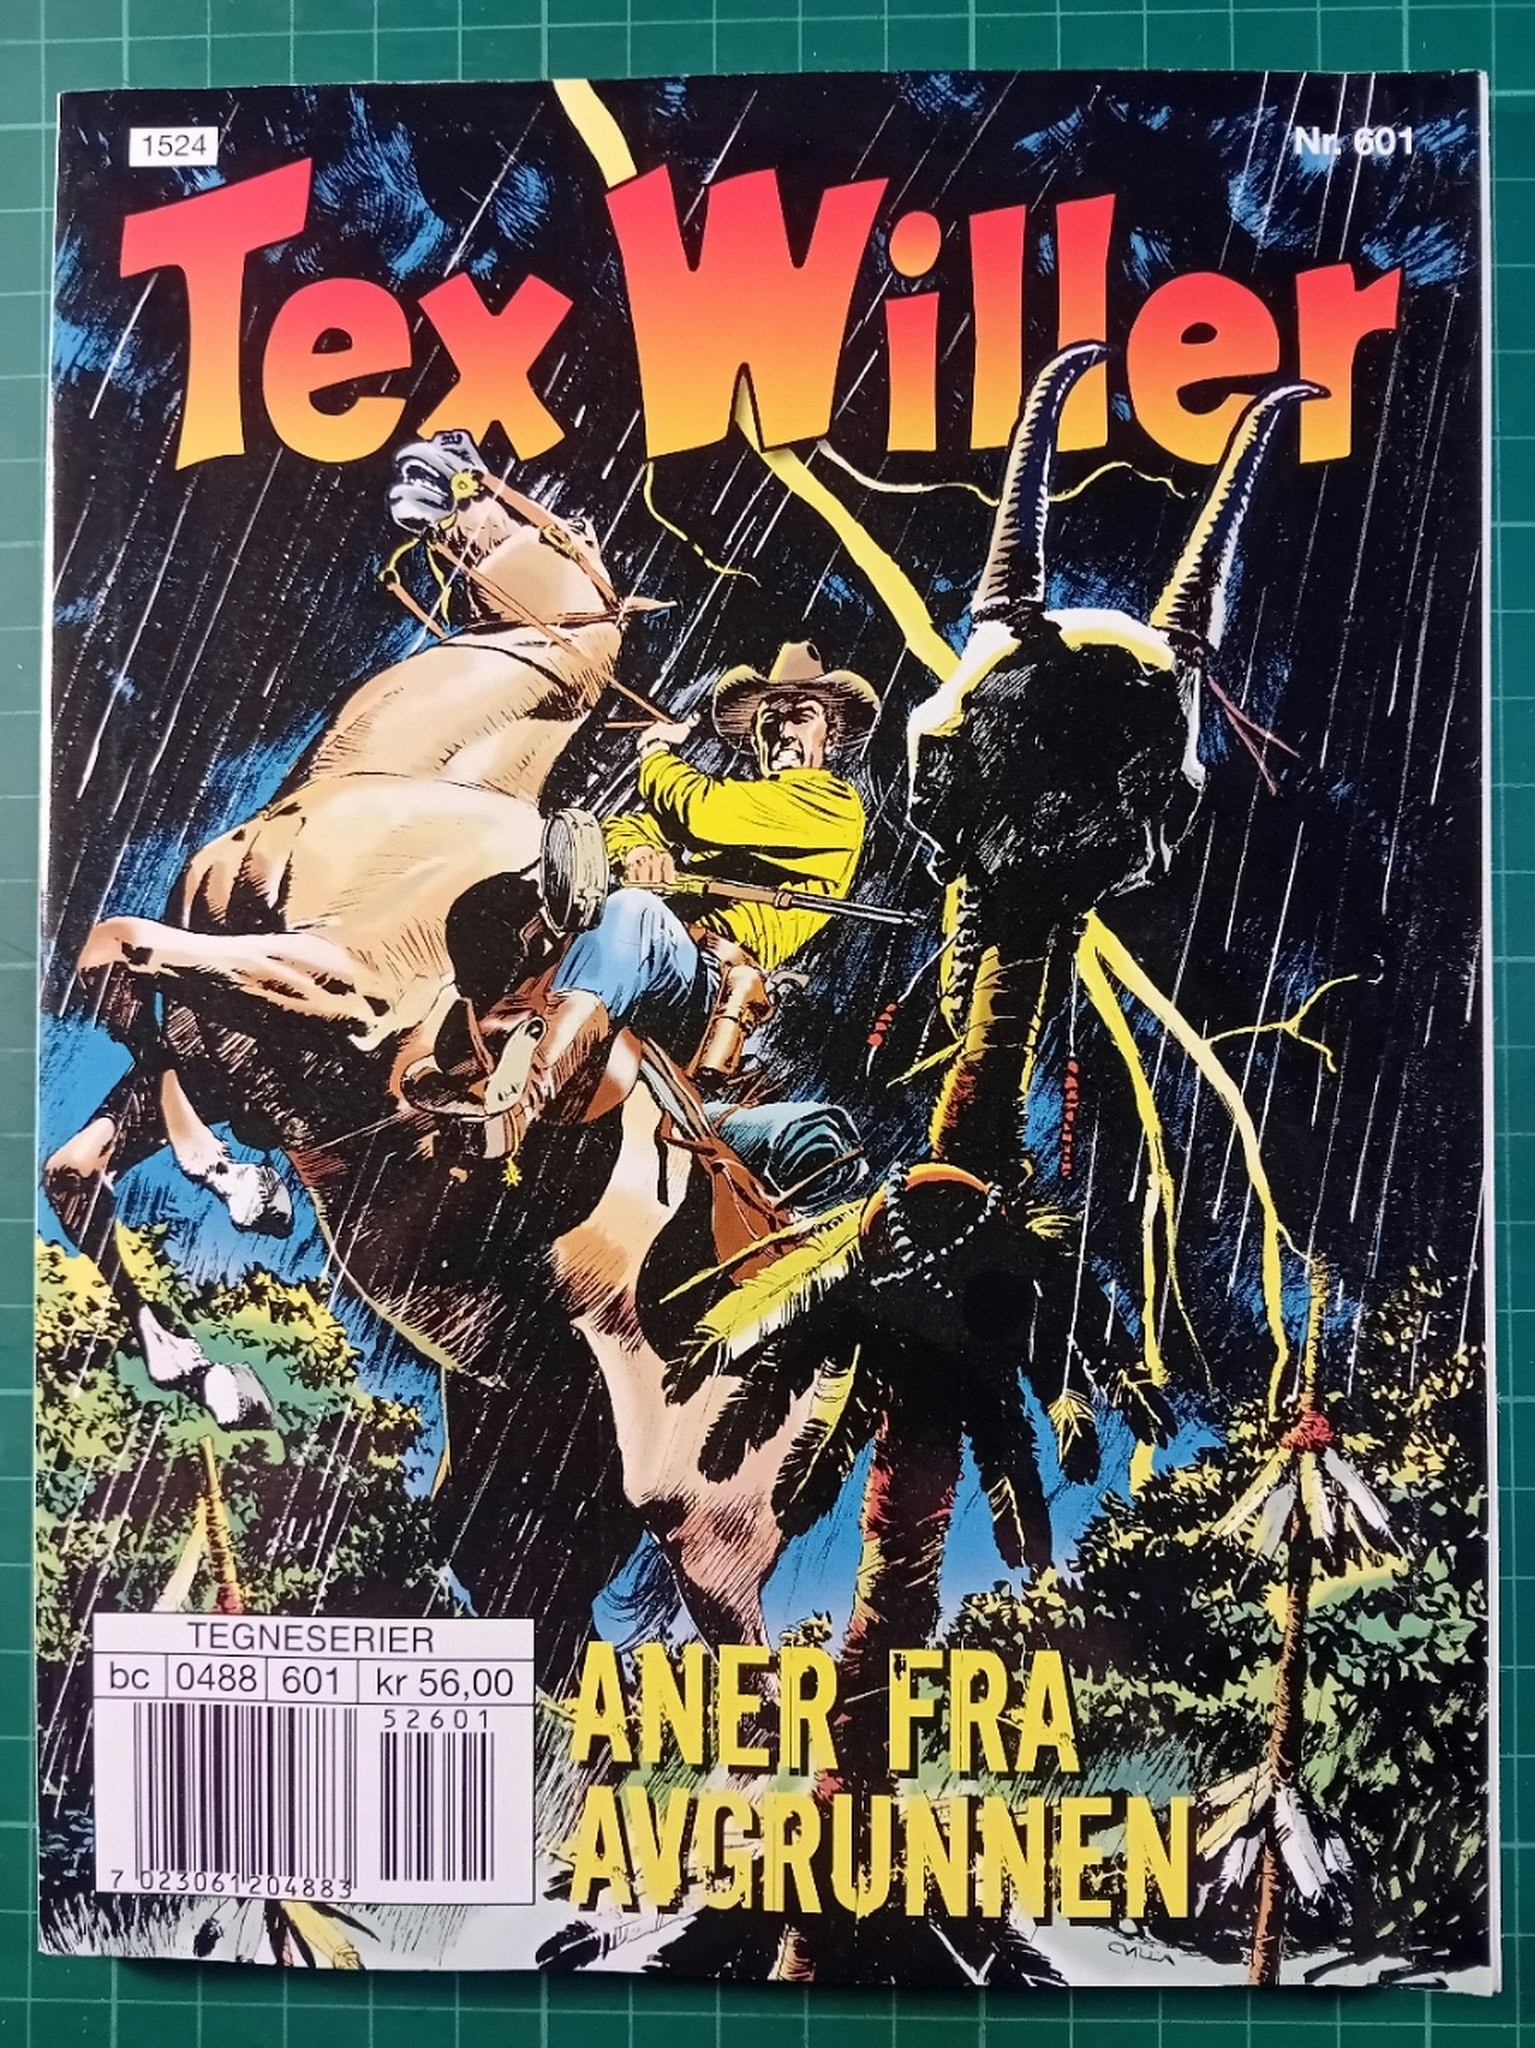 Tex Willer #601